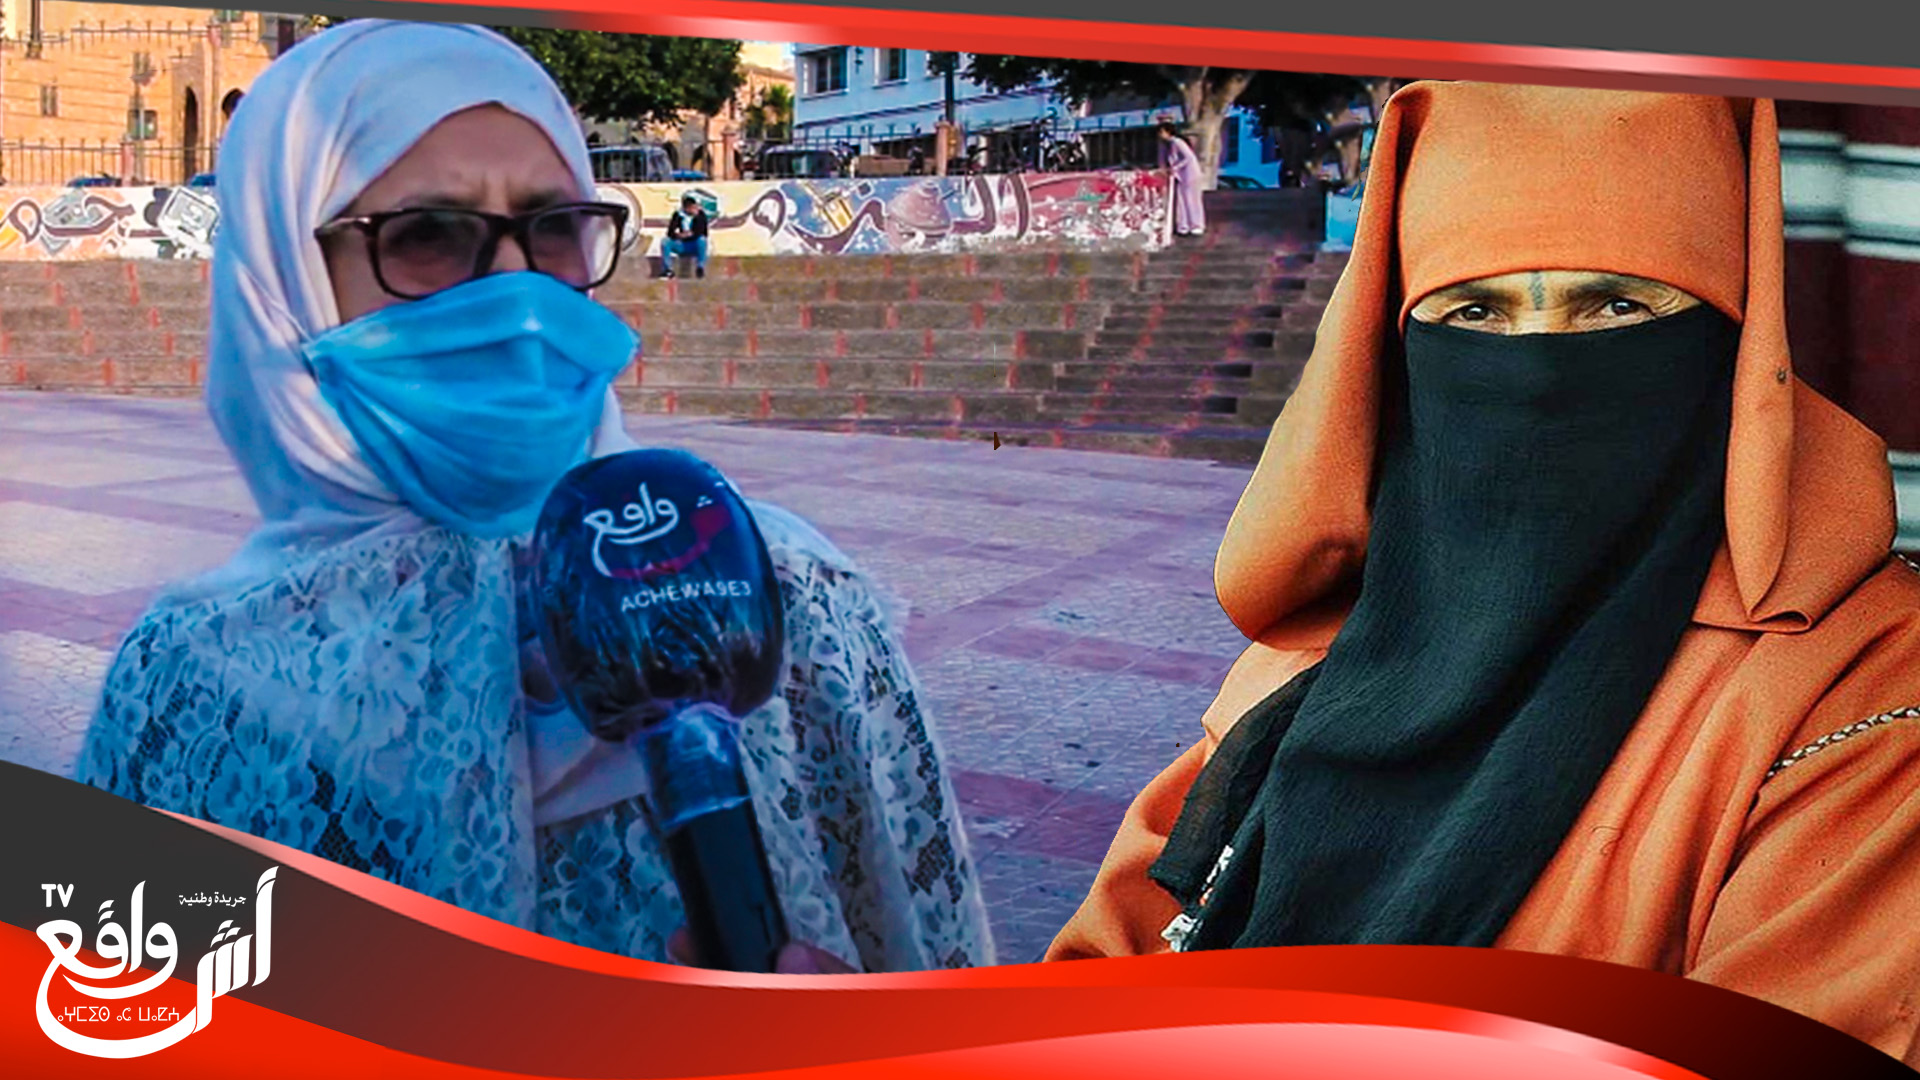 رأي الشارع المغربي بخصوص الكمامات.. ولفناهم بحال زمان كانو كيديرو "نقاب" دابا لكمامات